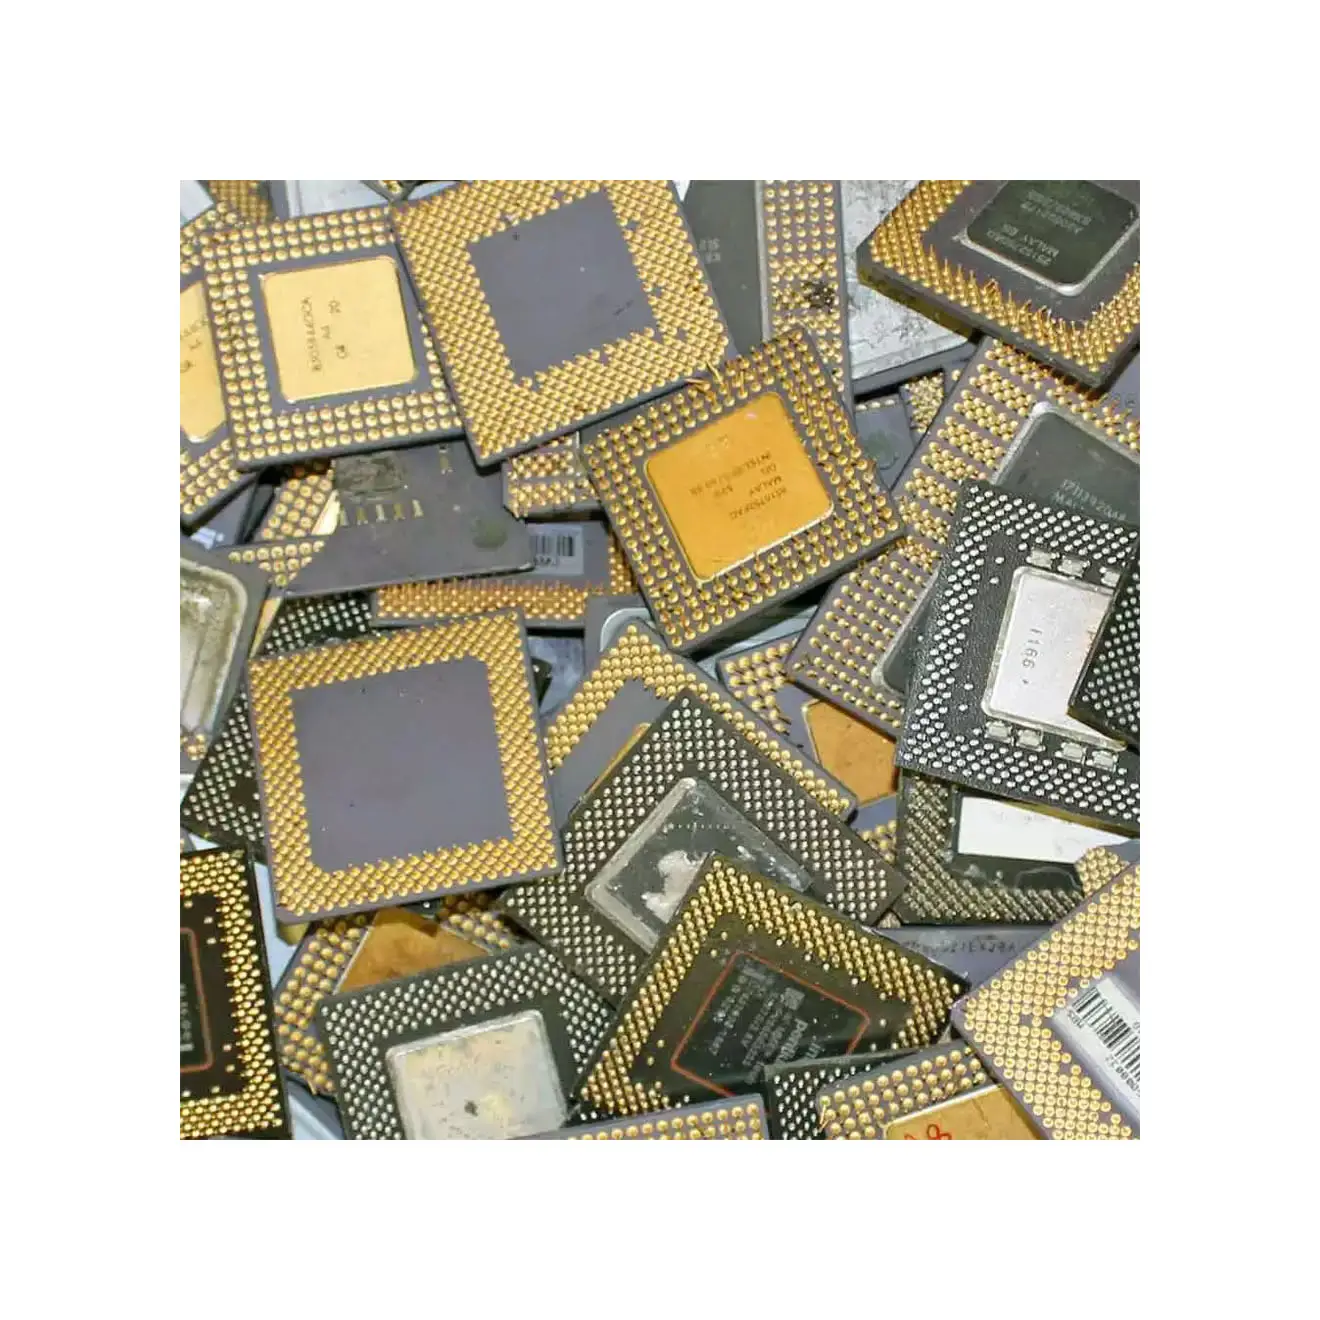 หมุดทอง//เศษโปรเซสเซอร์/Intel Pentium Pro เซรามิค AMD ใหม่ CPU 3500X 3600 3600X 3700x